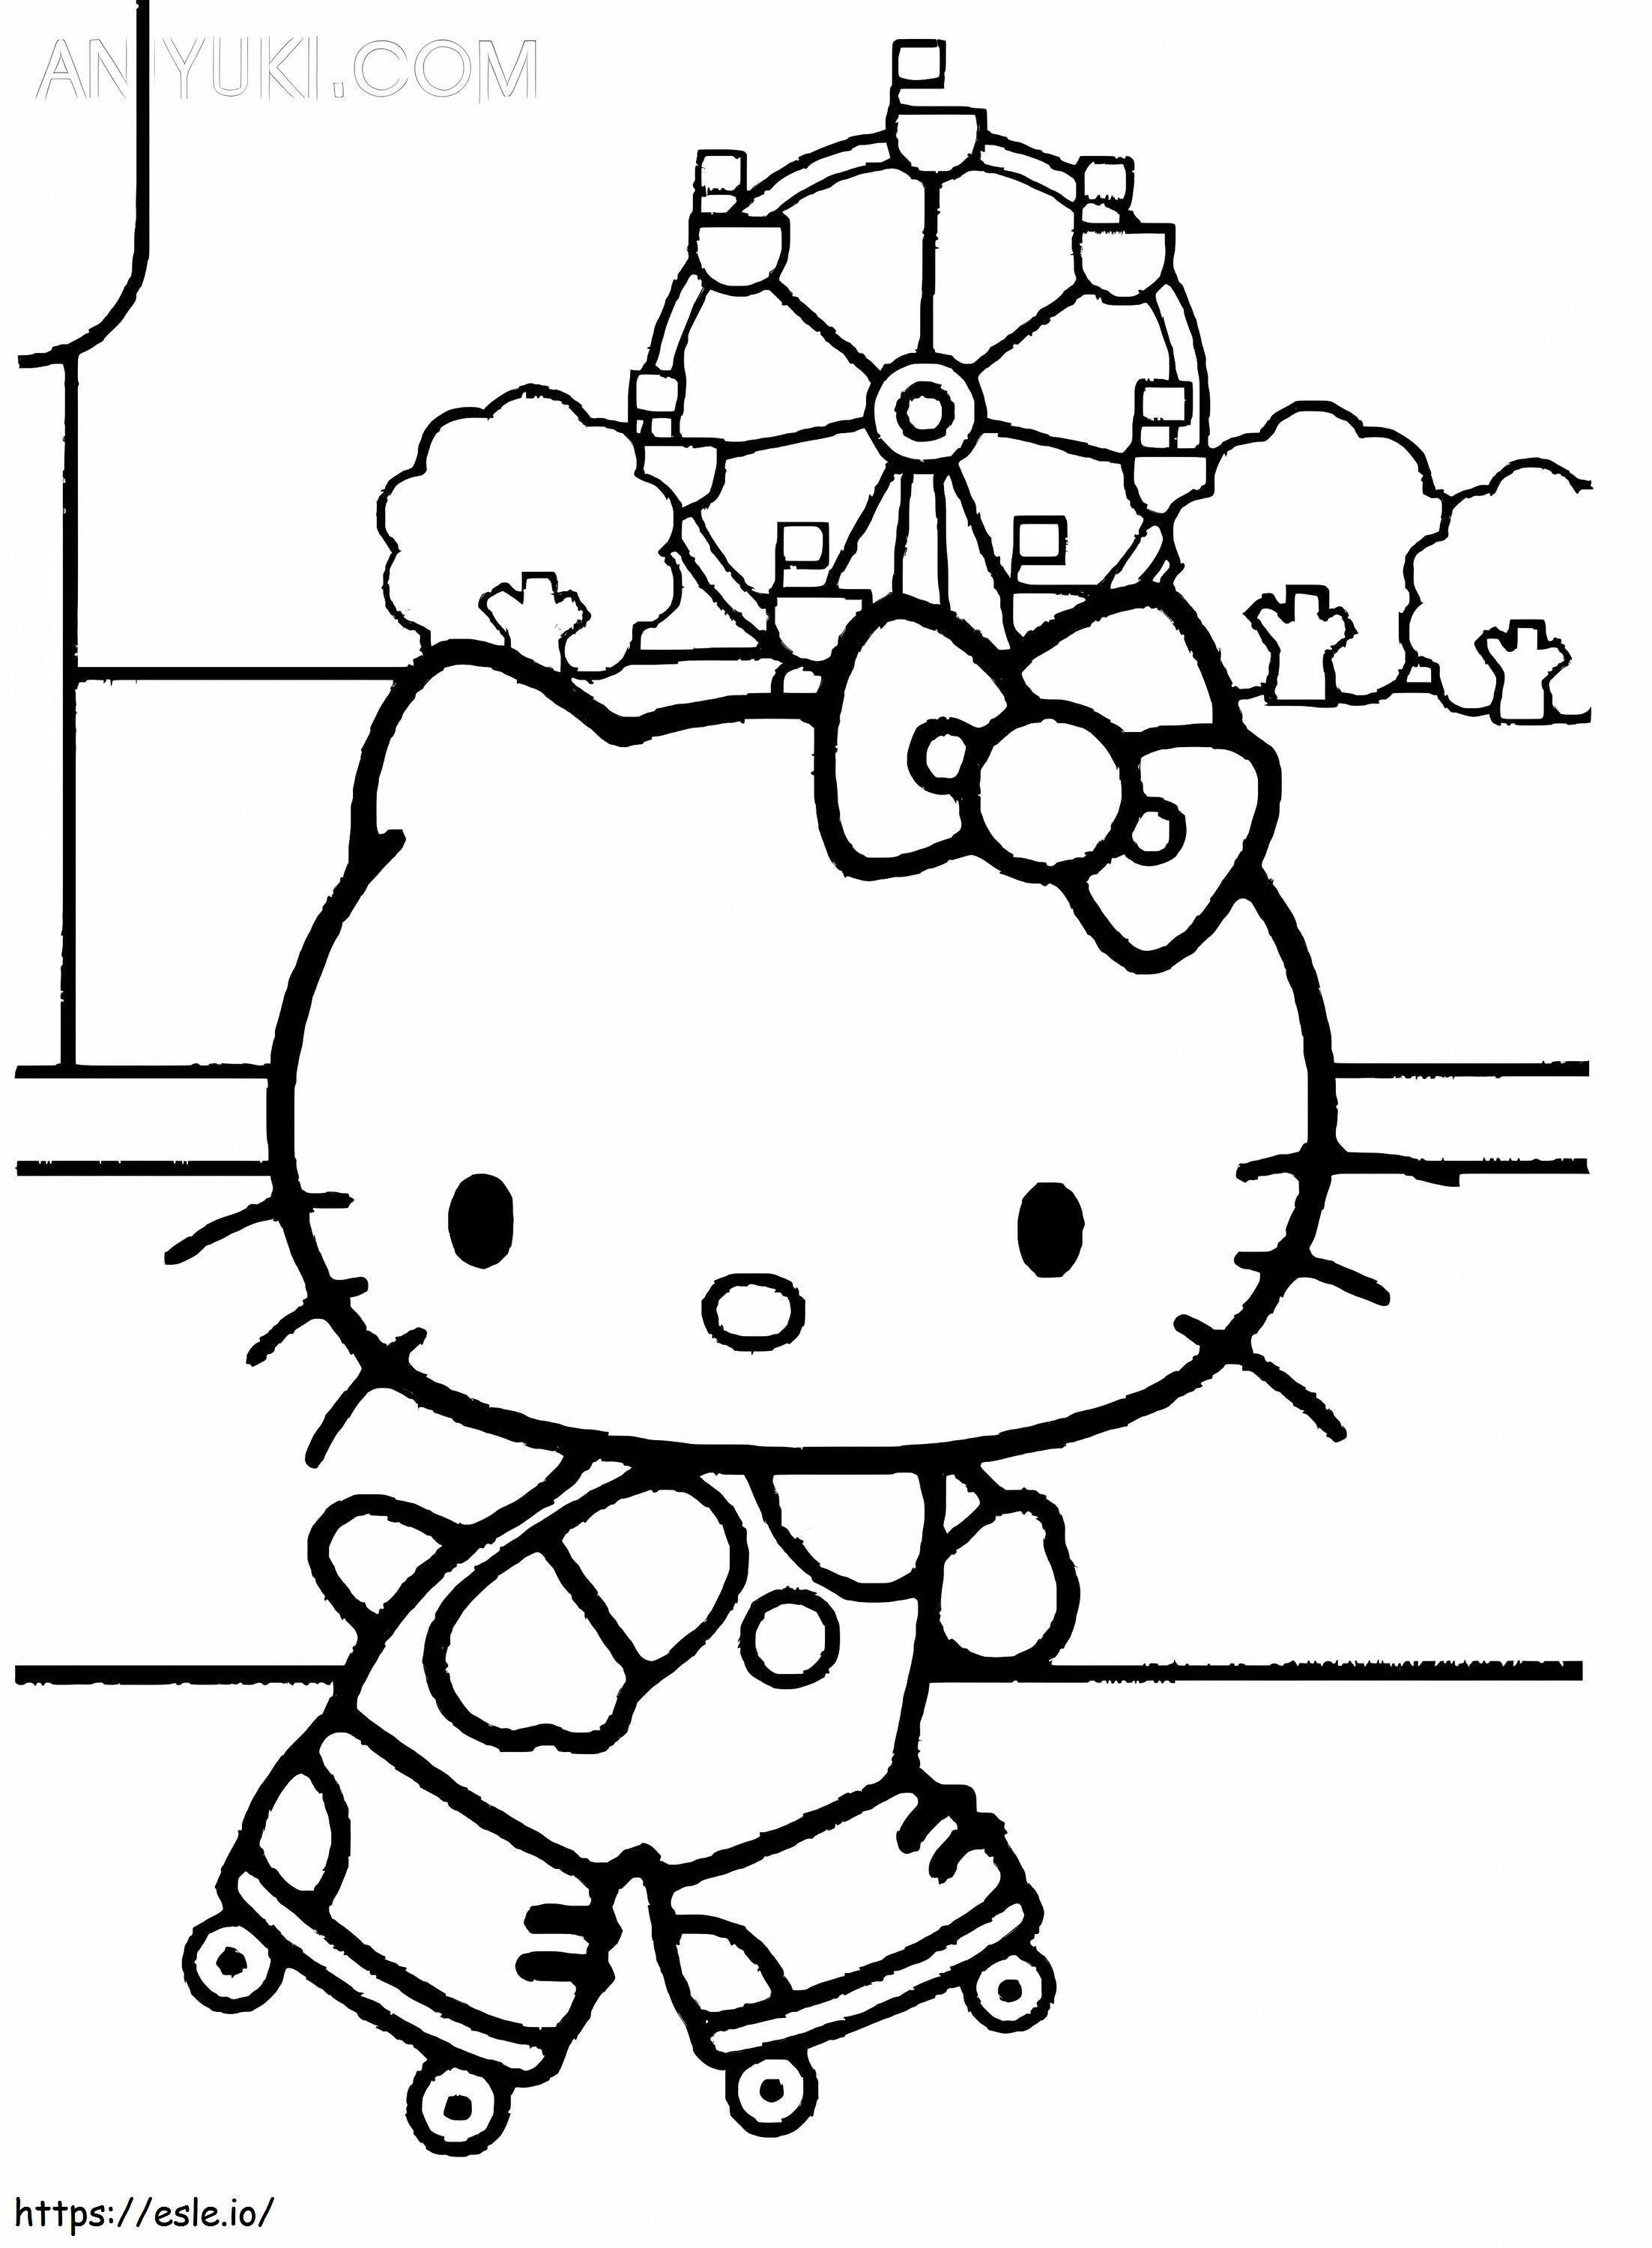 Coloriage Hello Kitty sur des patins à roulettes à imprimer dessin